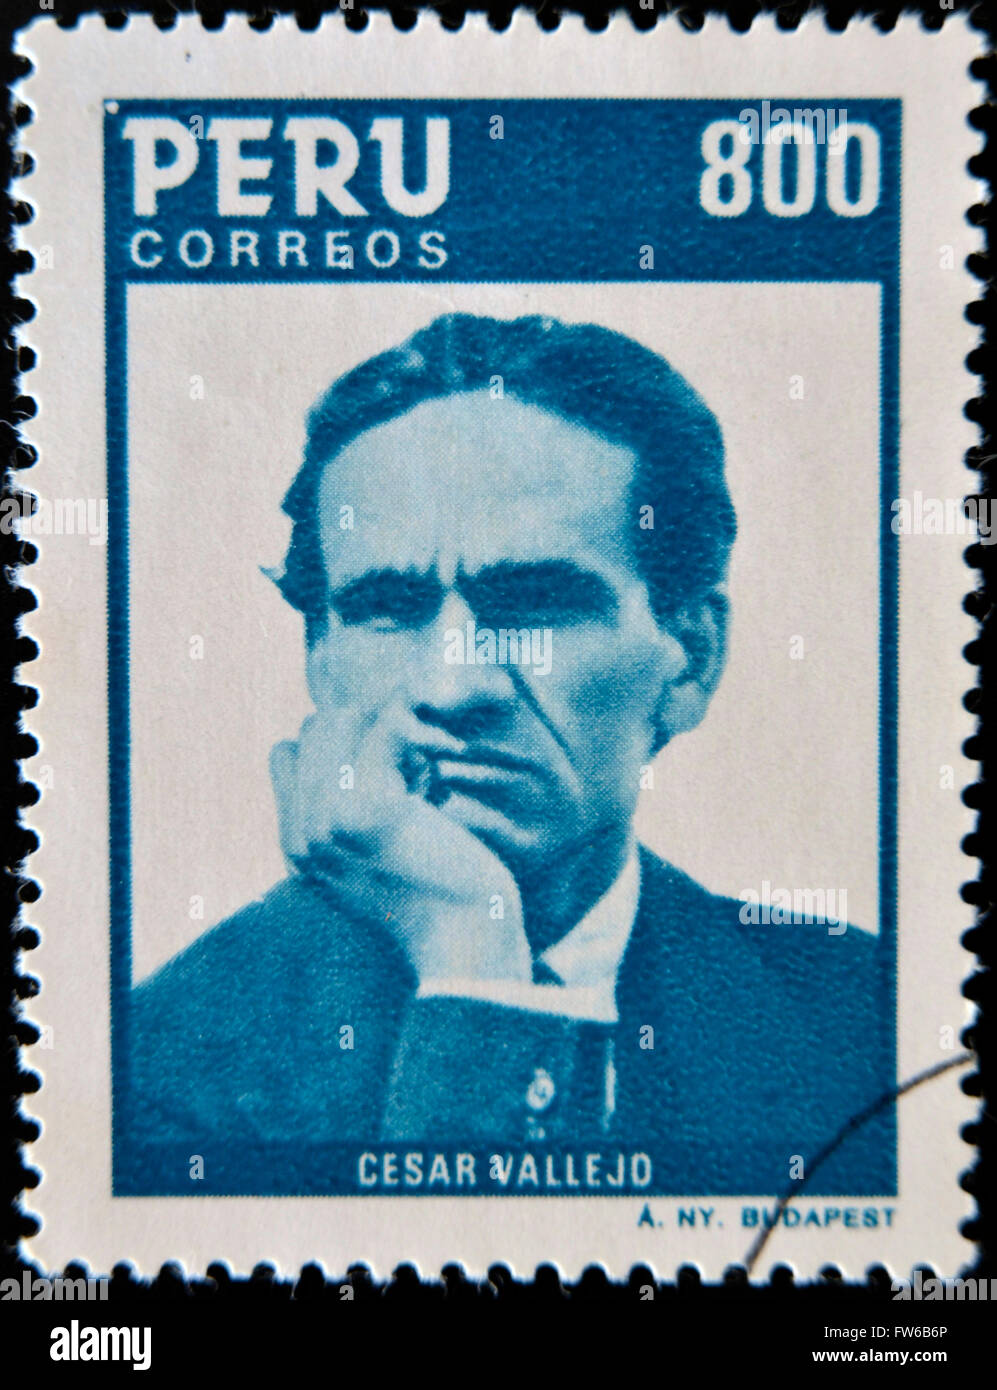 PERU - CIRCA 1986: A stamp printed in Peru shows Cesar Vallejo, circa 1986 Stock Photo